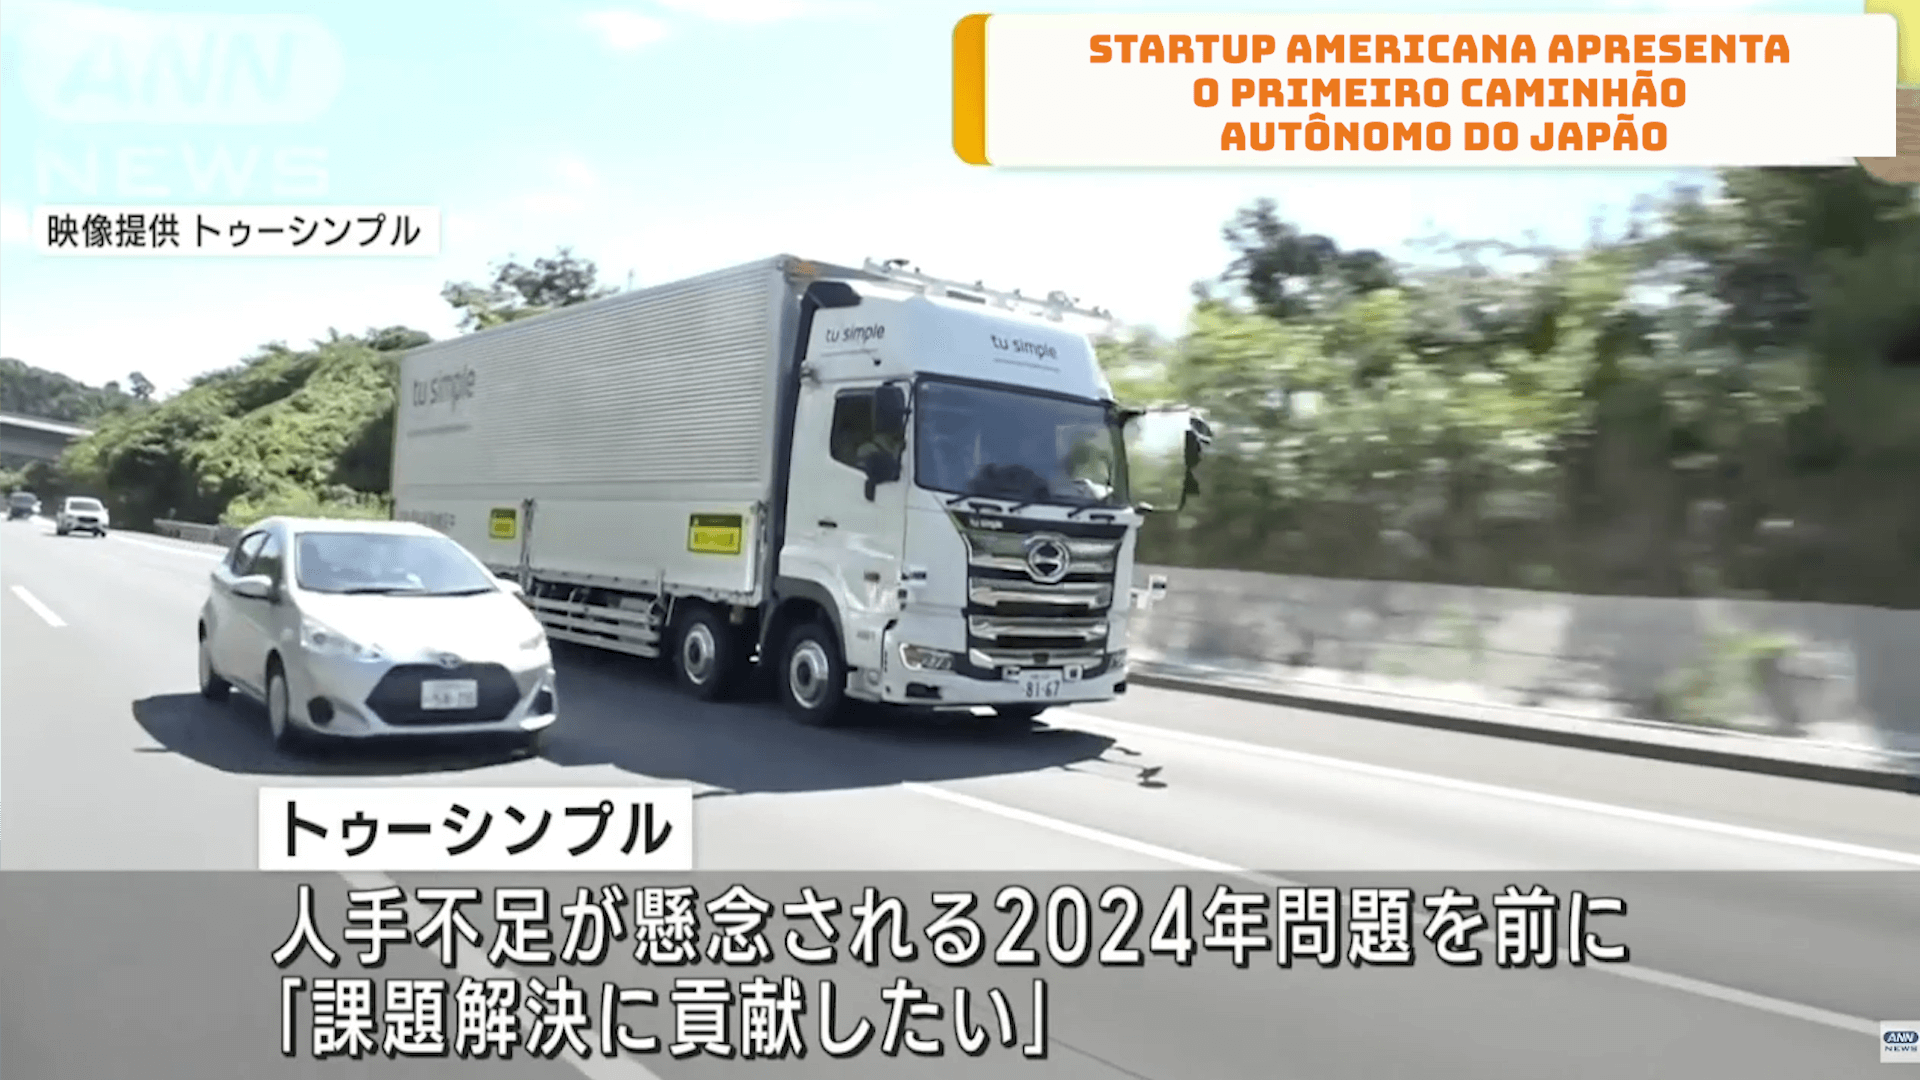 Startup americana apresenta o primeiro caminhão autônomo do Japão